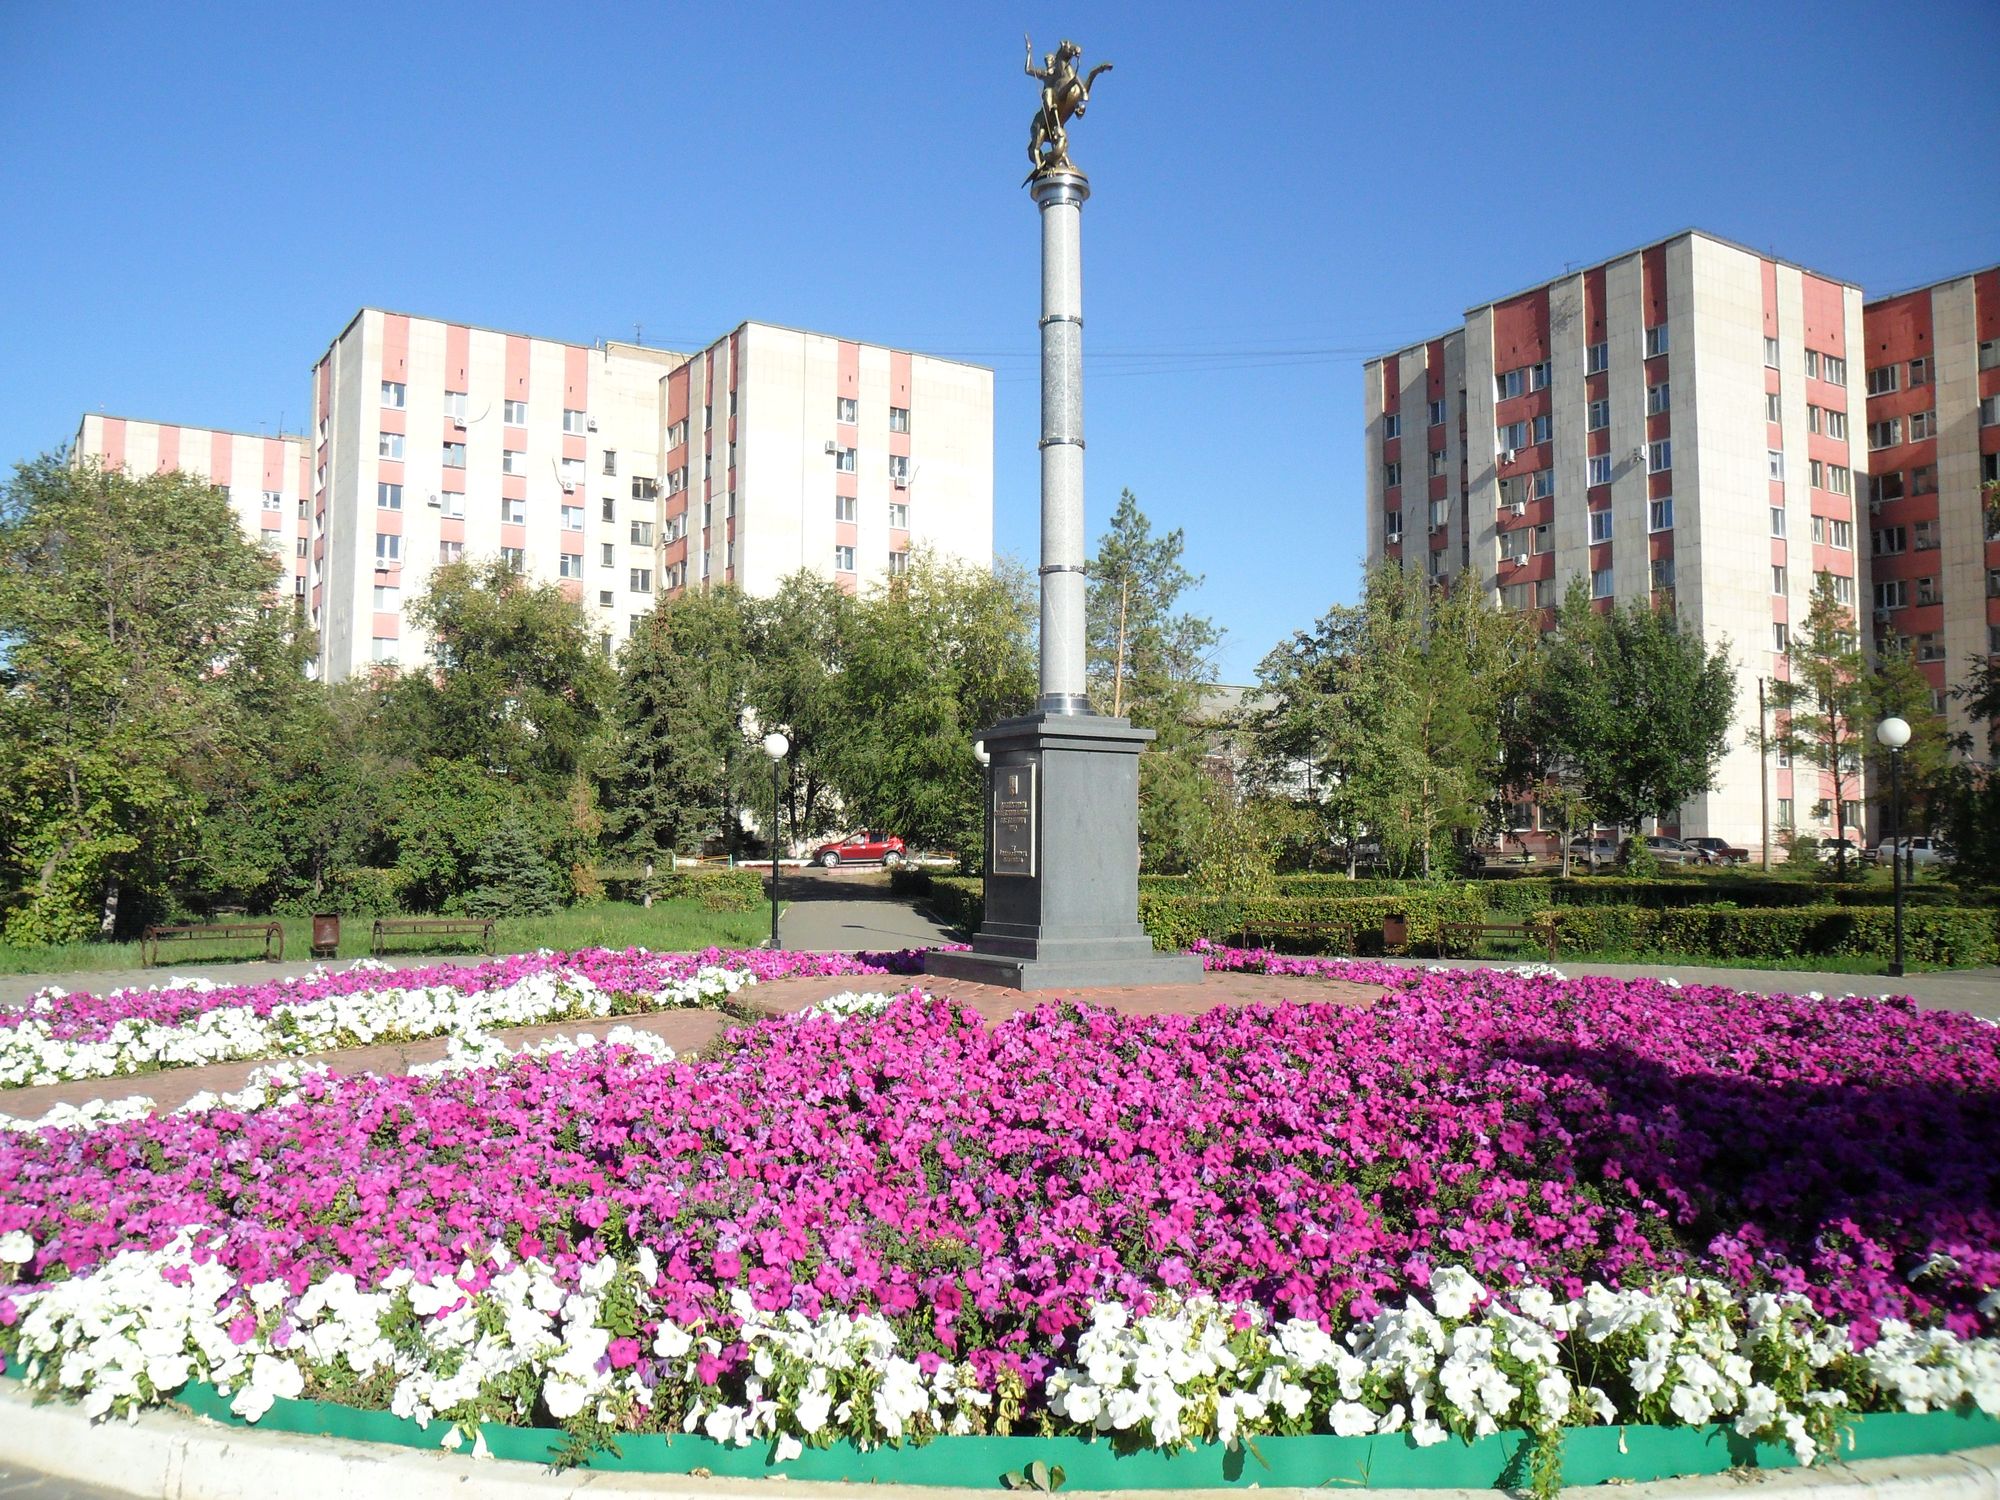 Памятник Советским воинам